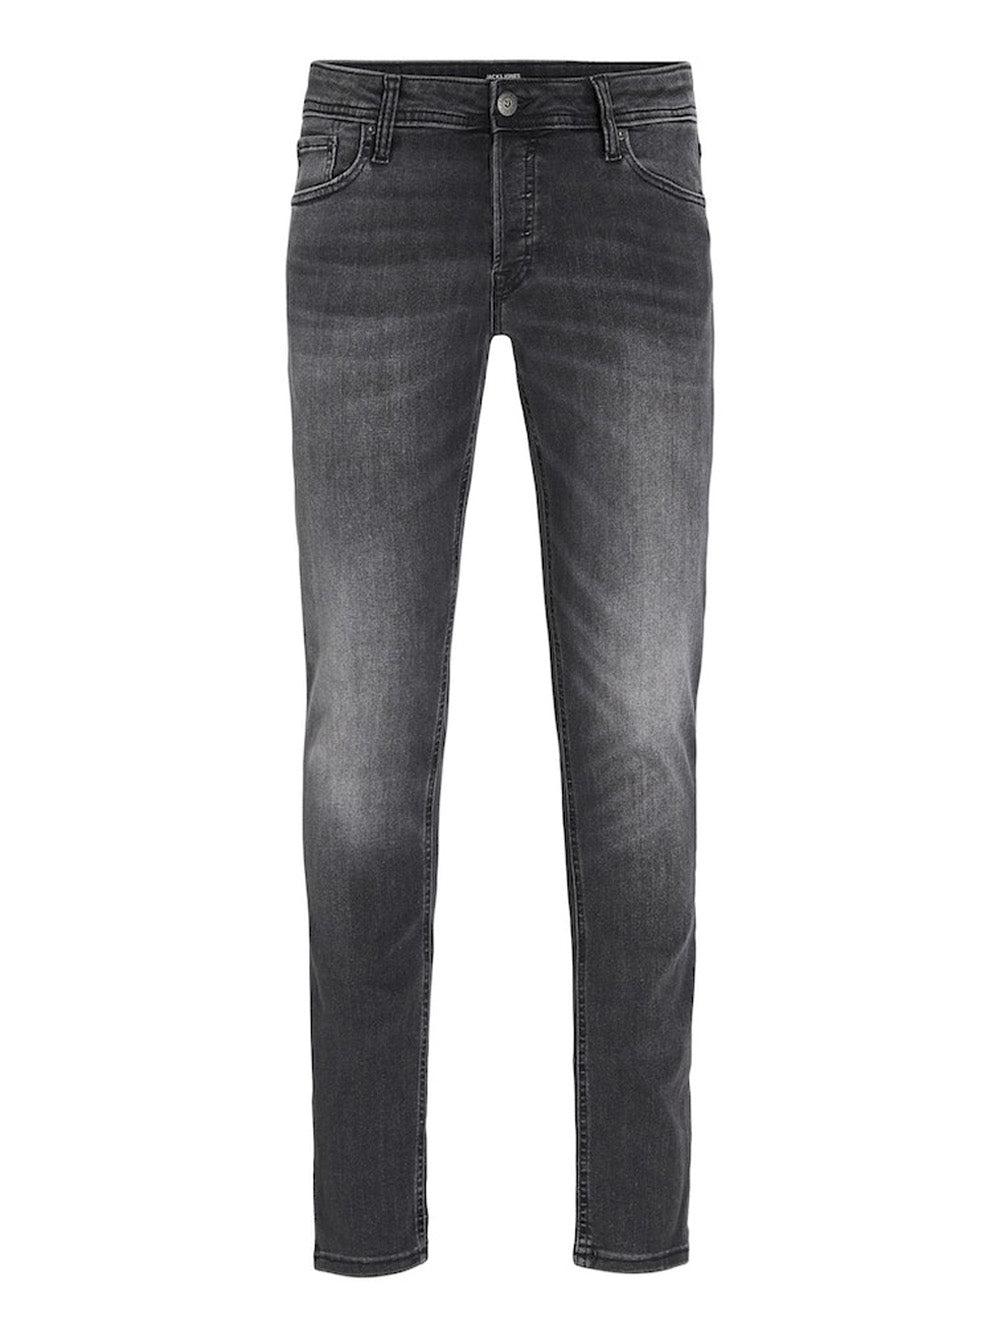 JACK&JONES Jeans Uomo - Nero modello 12159030